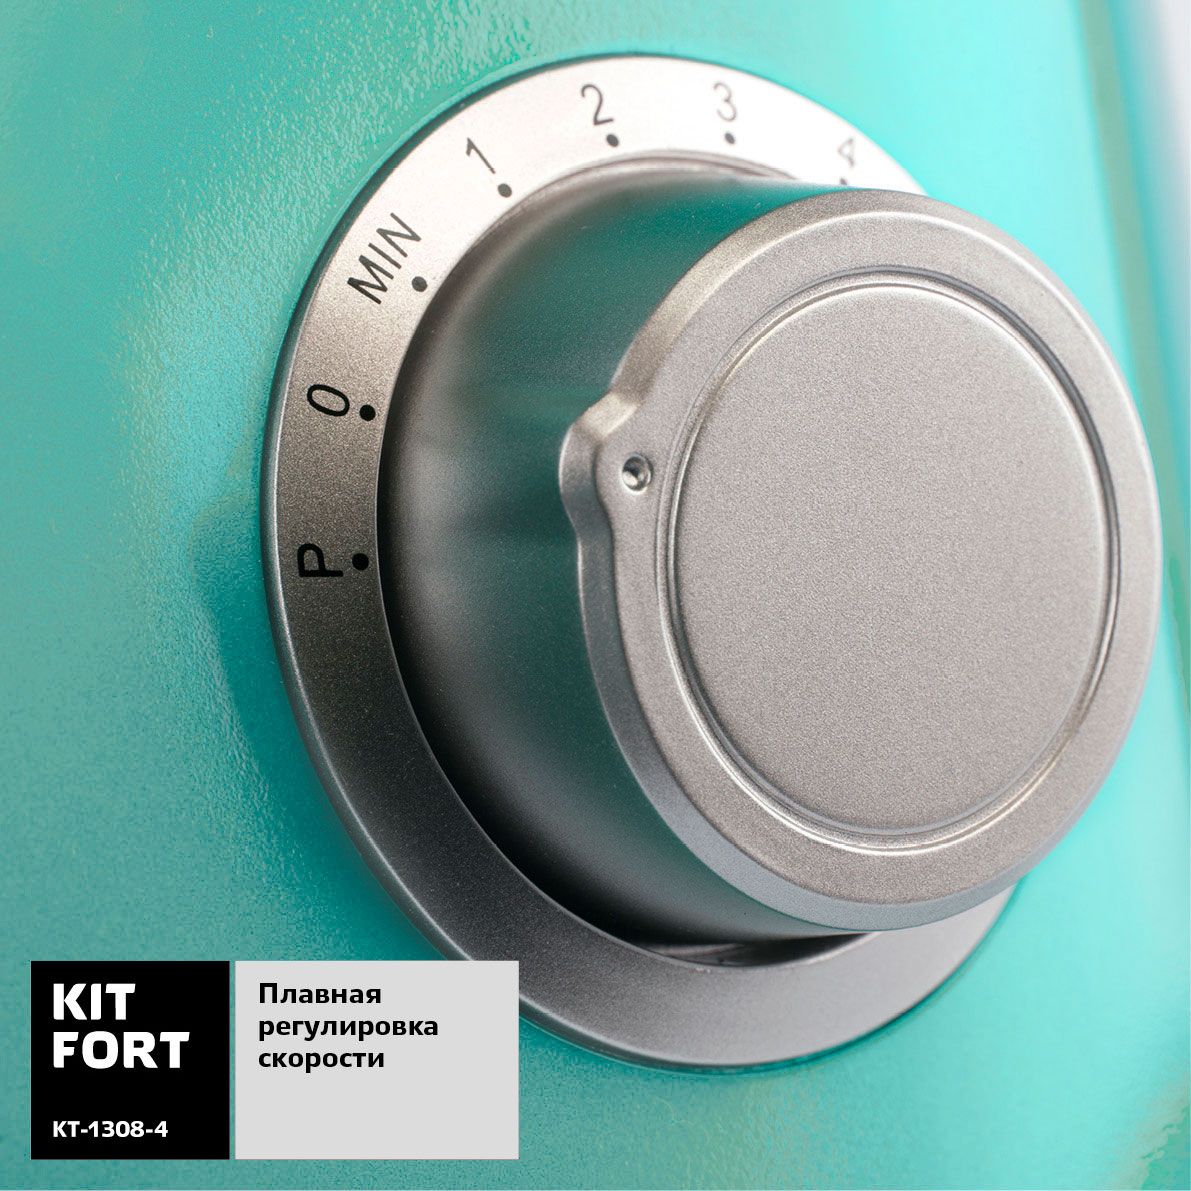  Kitfort -1308-4, Turquoise 